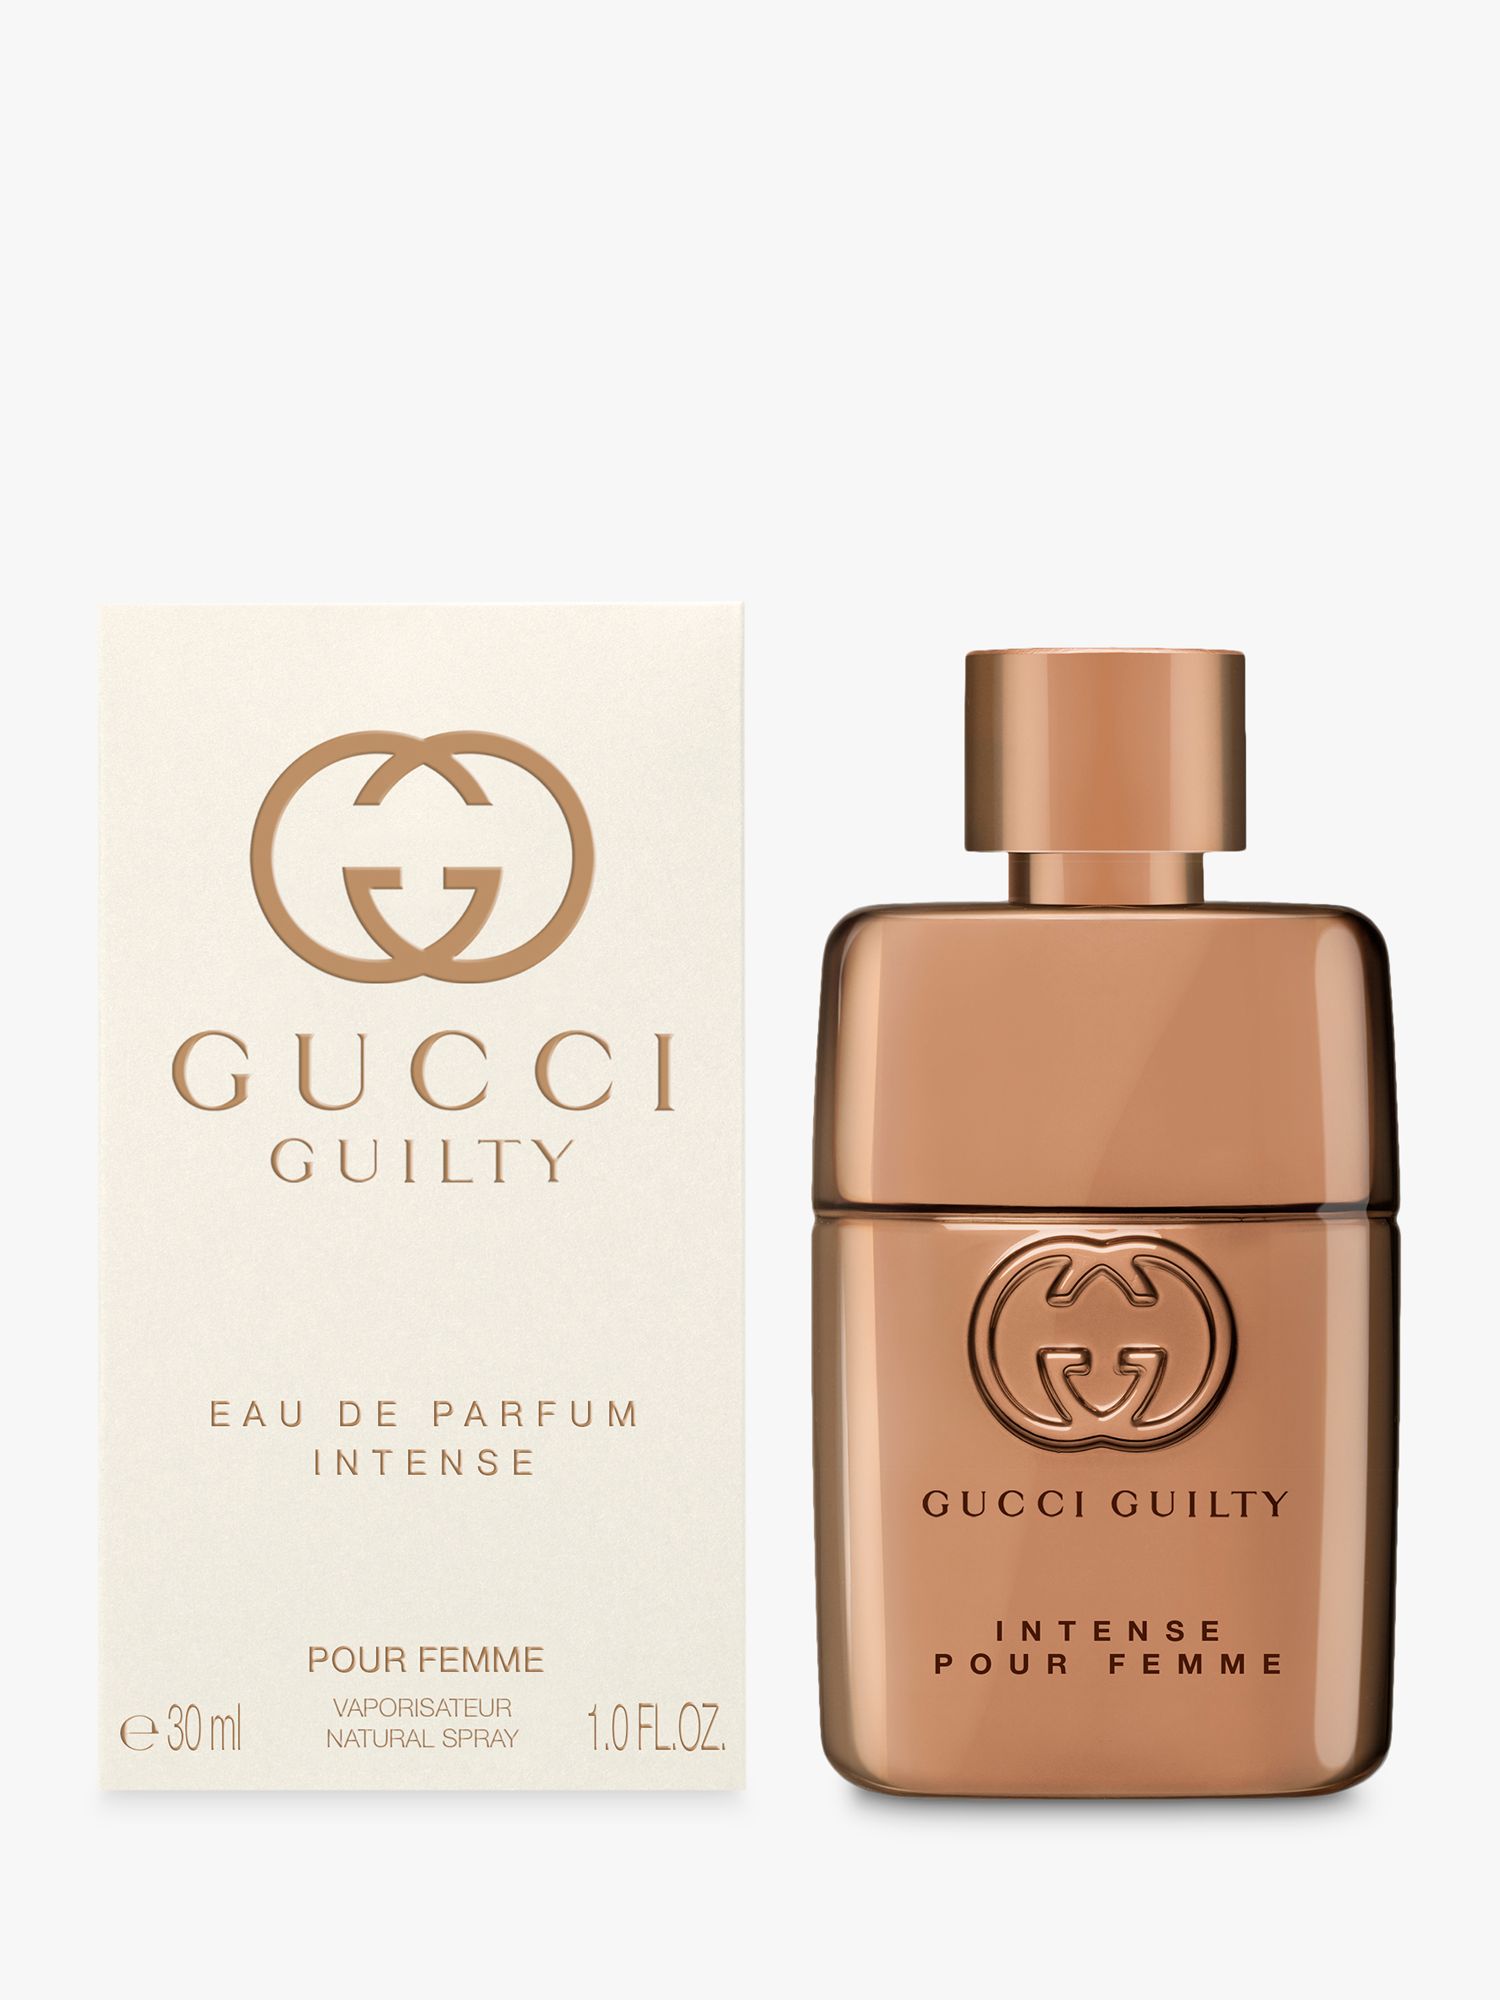 Gucci Guilty Eau de Parfum Intense For Her, 30ml at John Lewis & Partners